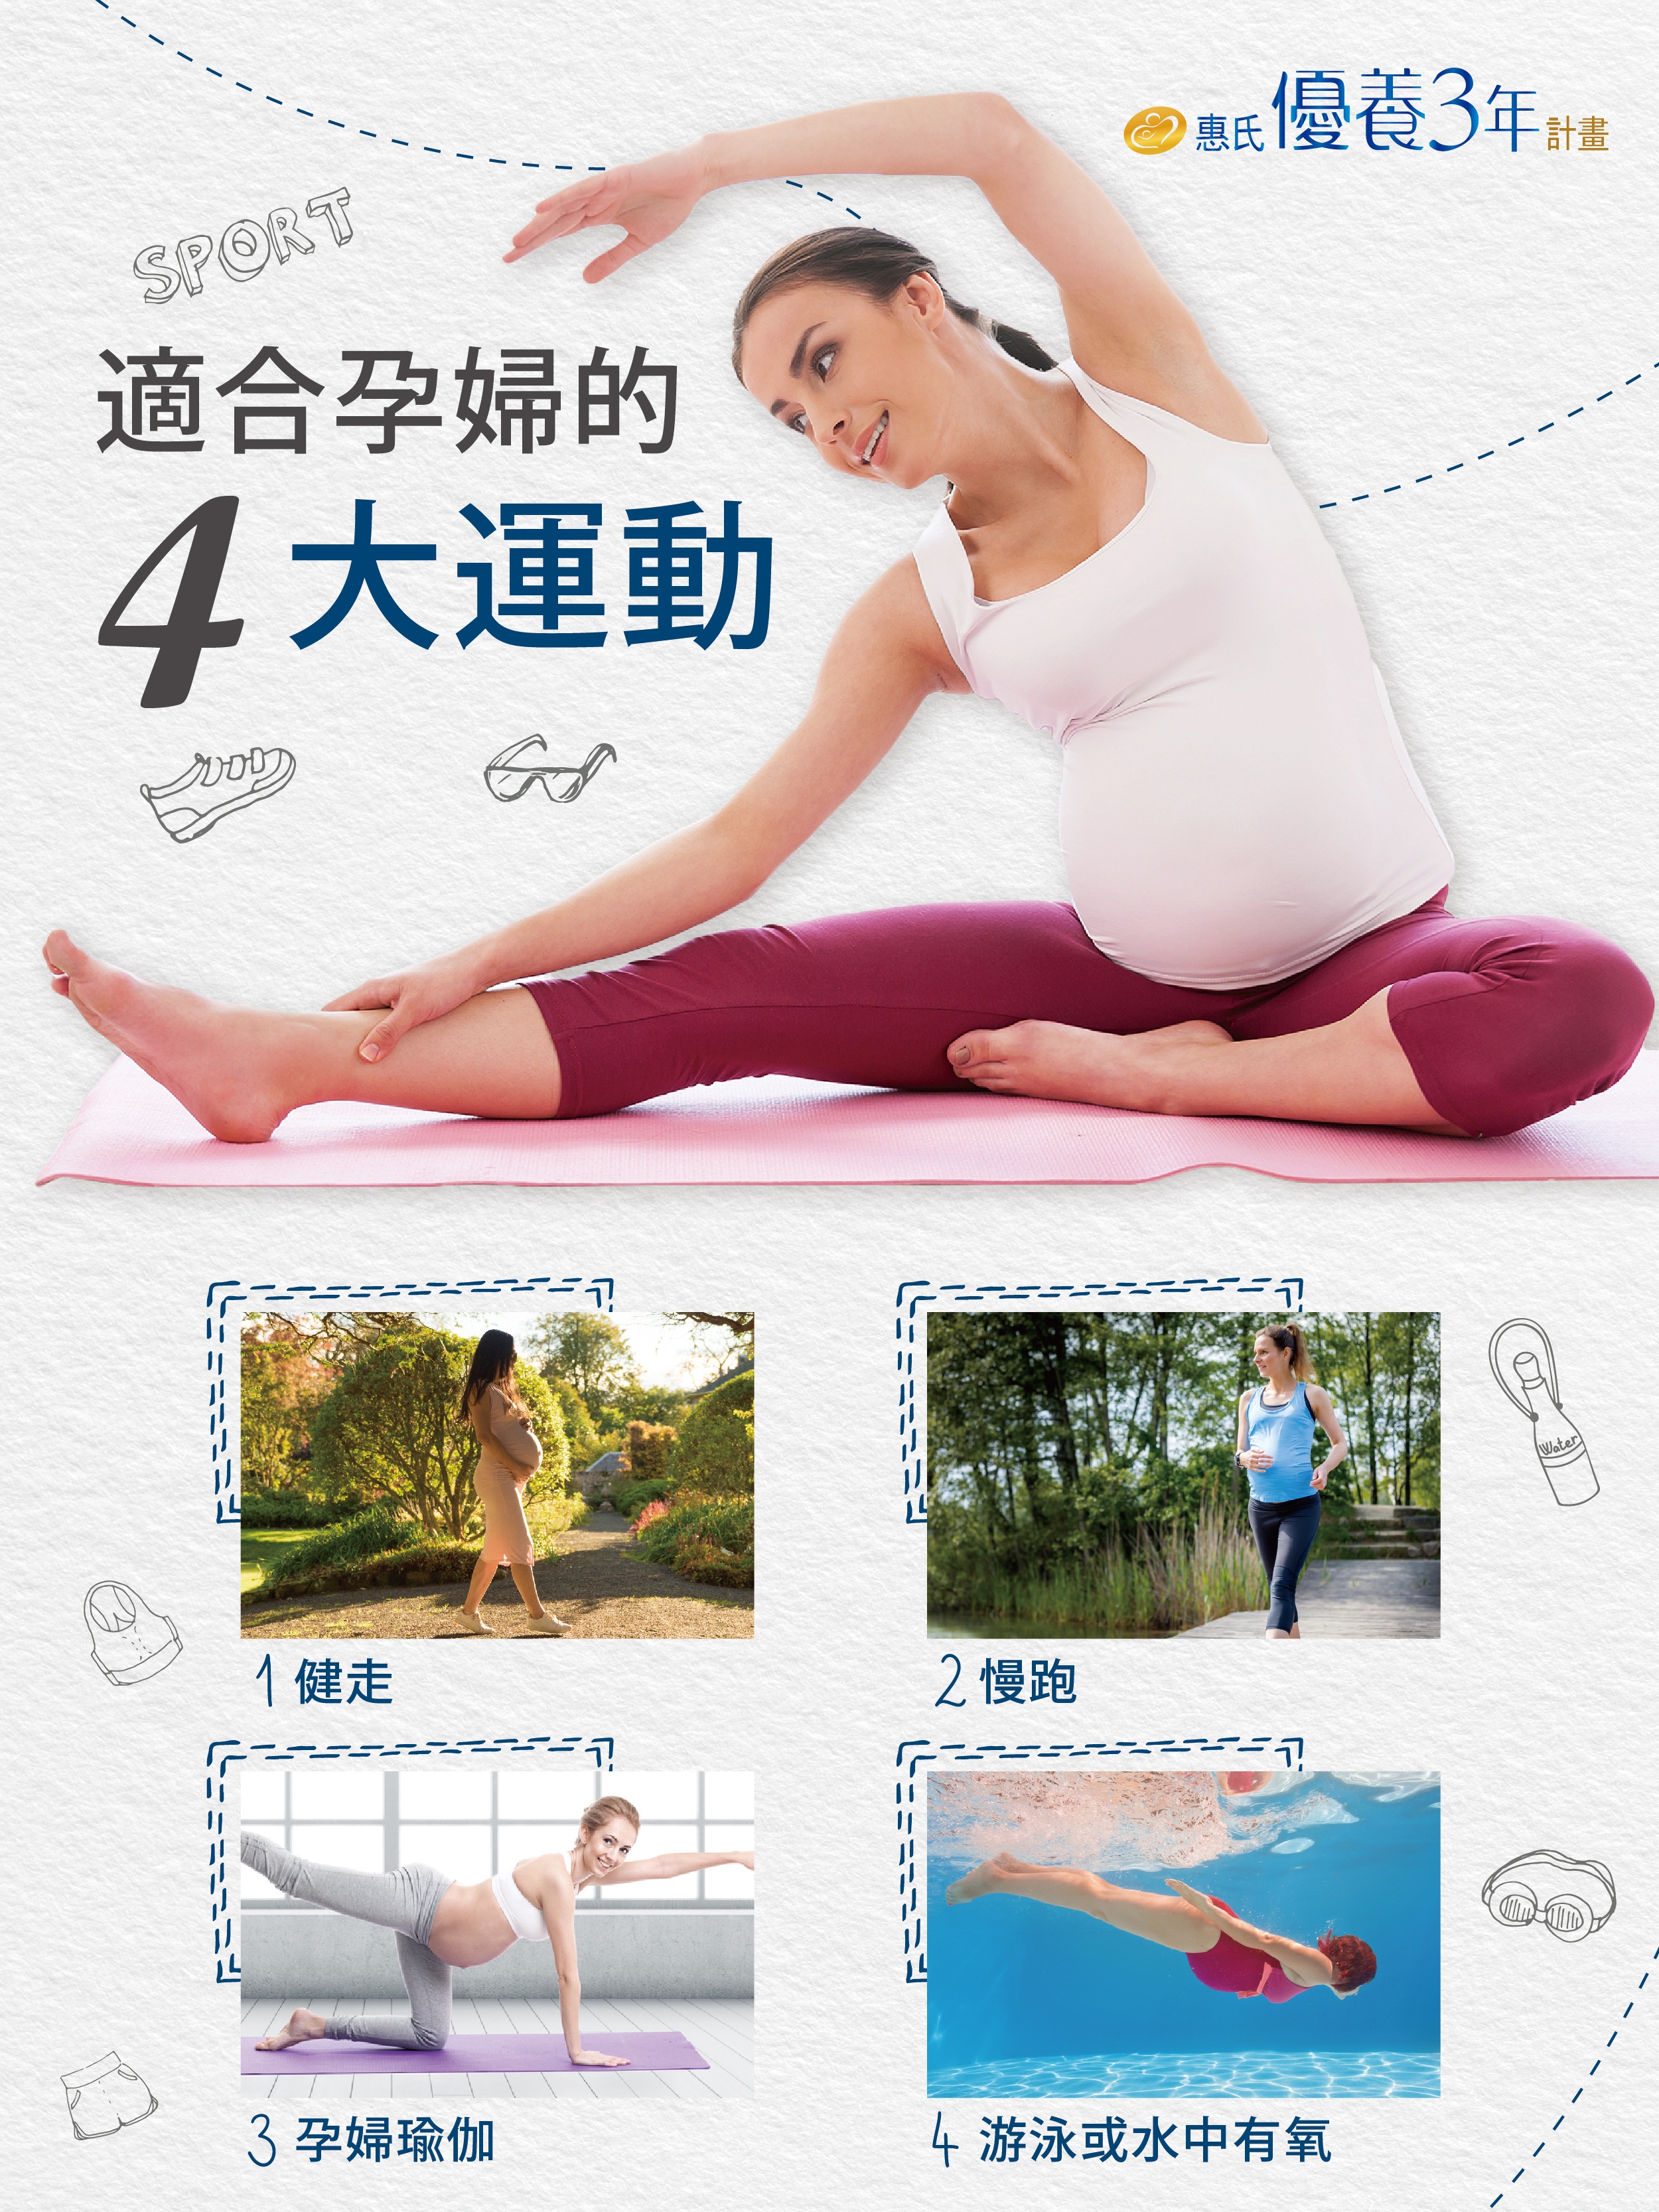 適合懷孕孕婦的4大運動